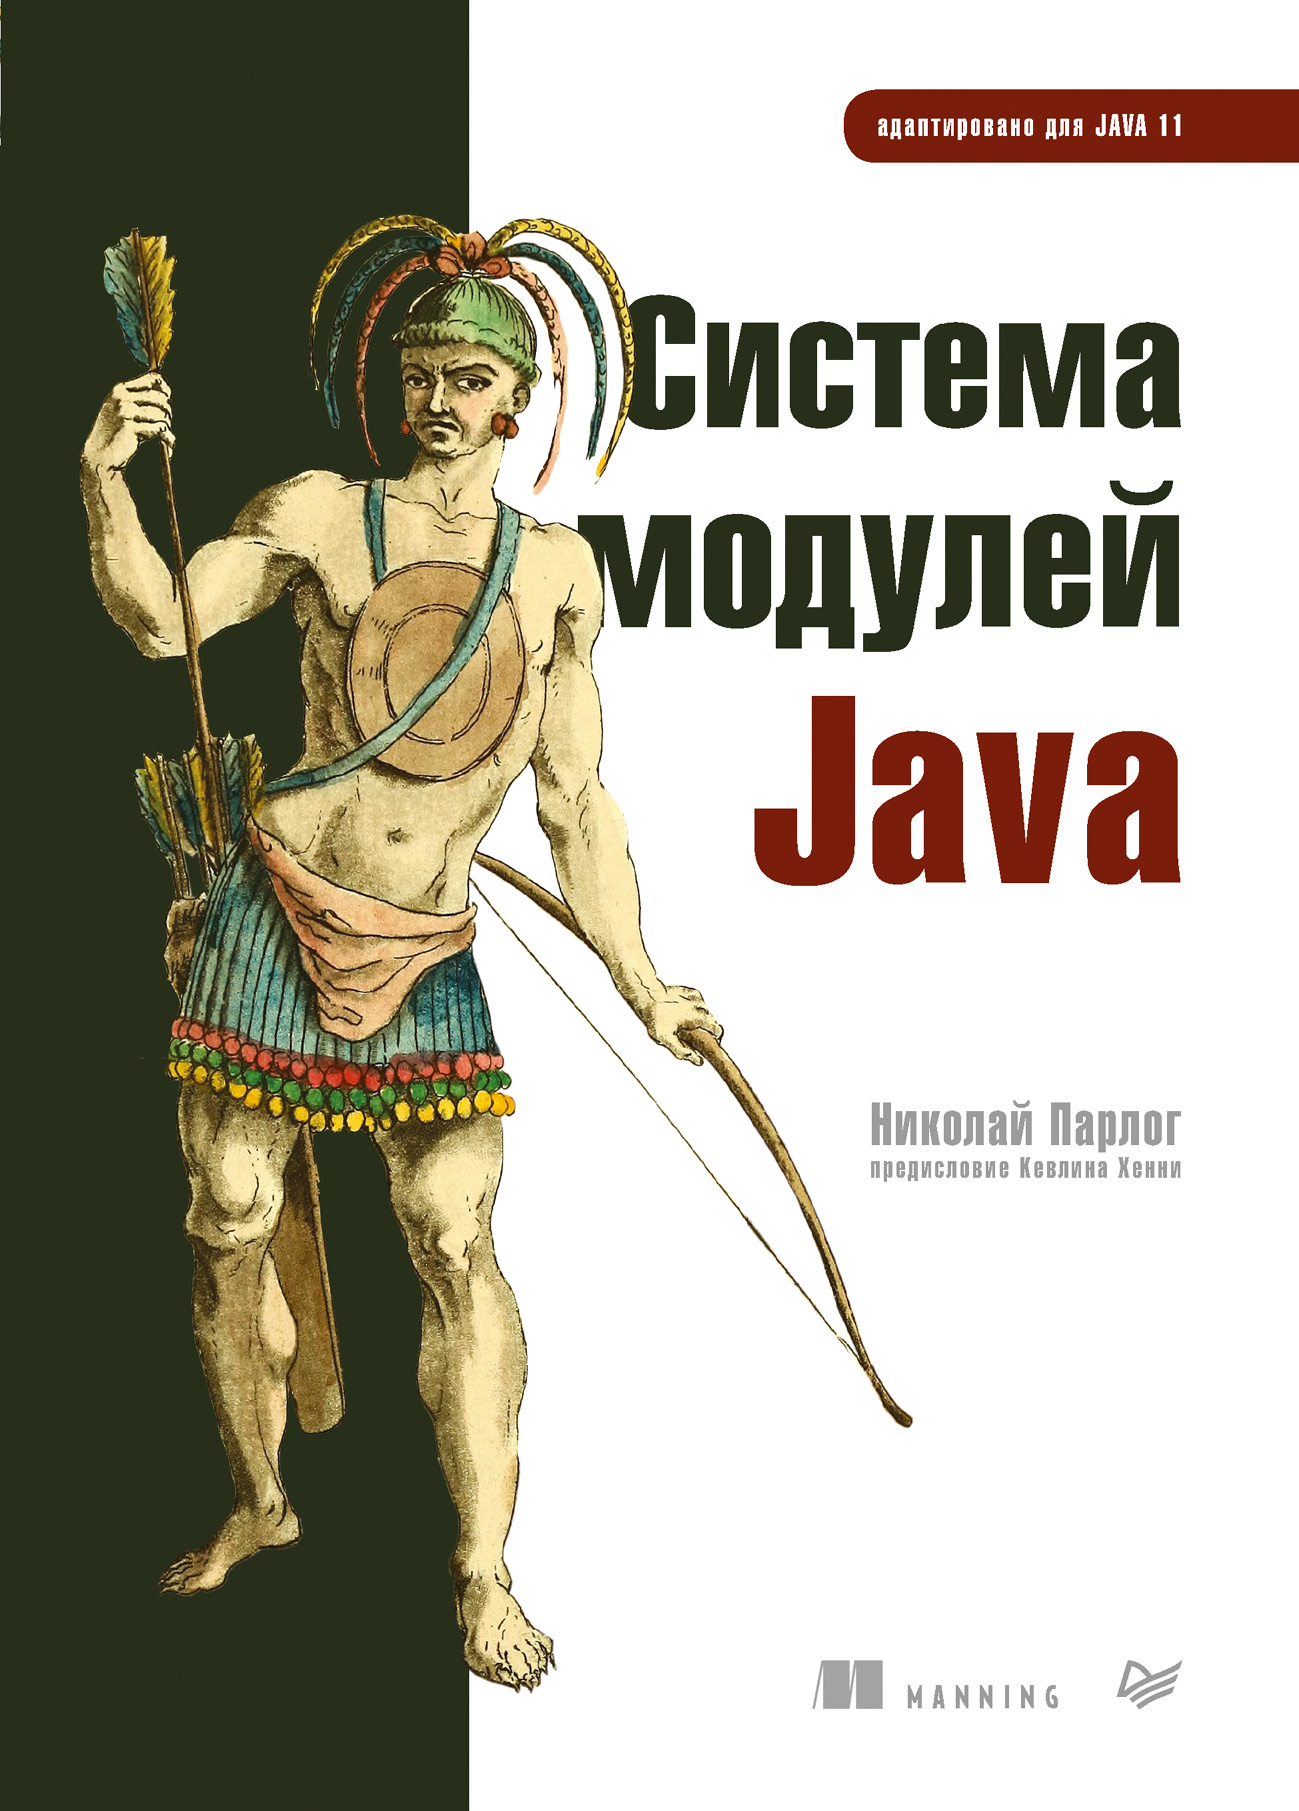 Книга Для профессионалов (Питер) Система модулей Java созданная Парлог Николай, Анатолий Павлов может относится к жанру зарубежная компьютерная литература, программирование. Стоимость электронной книги Система модулей Java с идентификатором 64073356 составляет 609.00 руб.